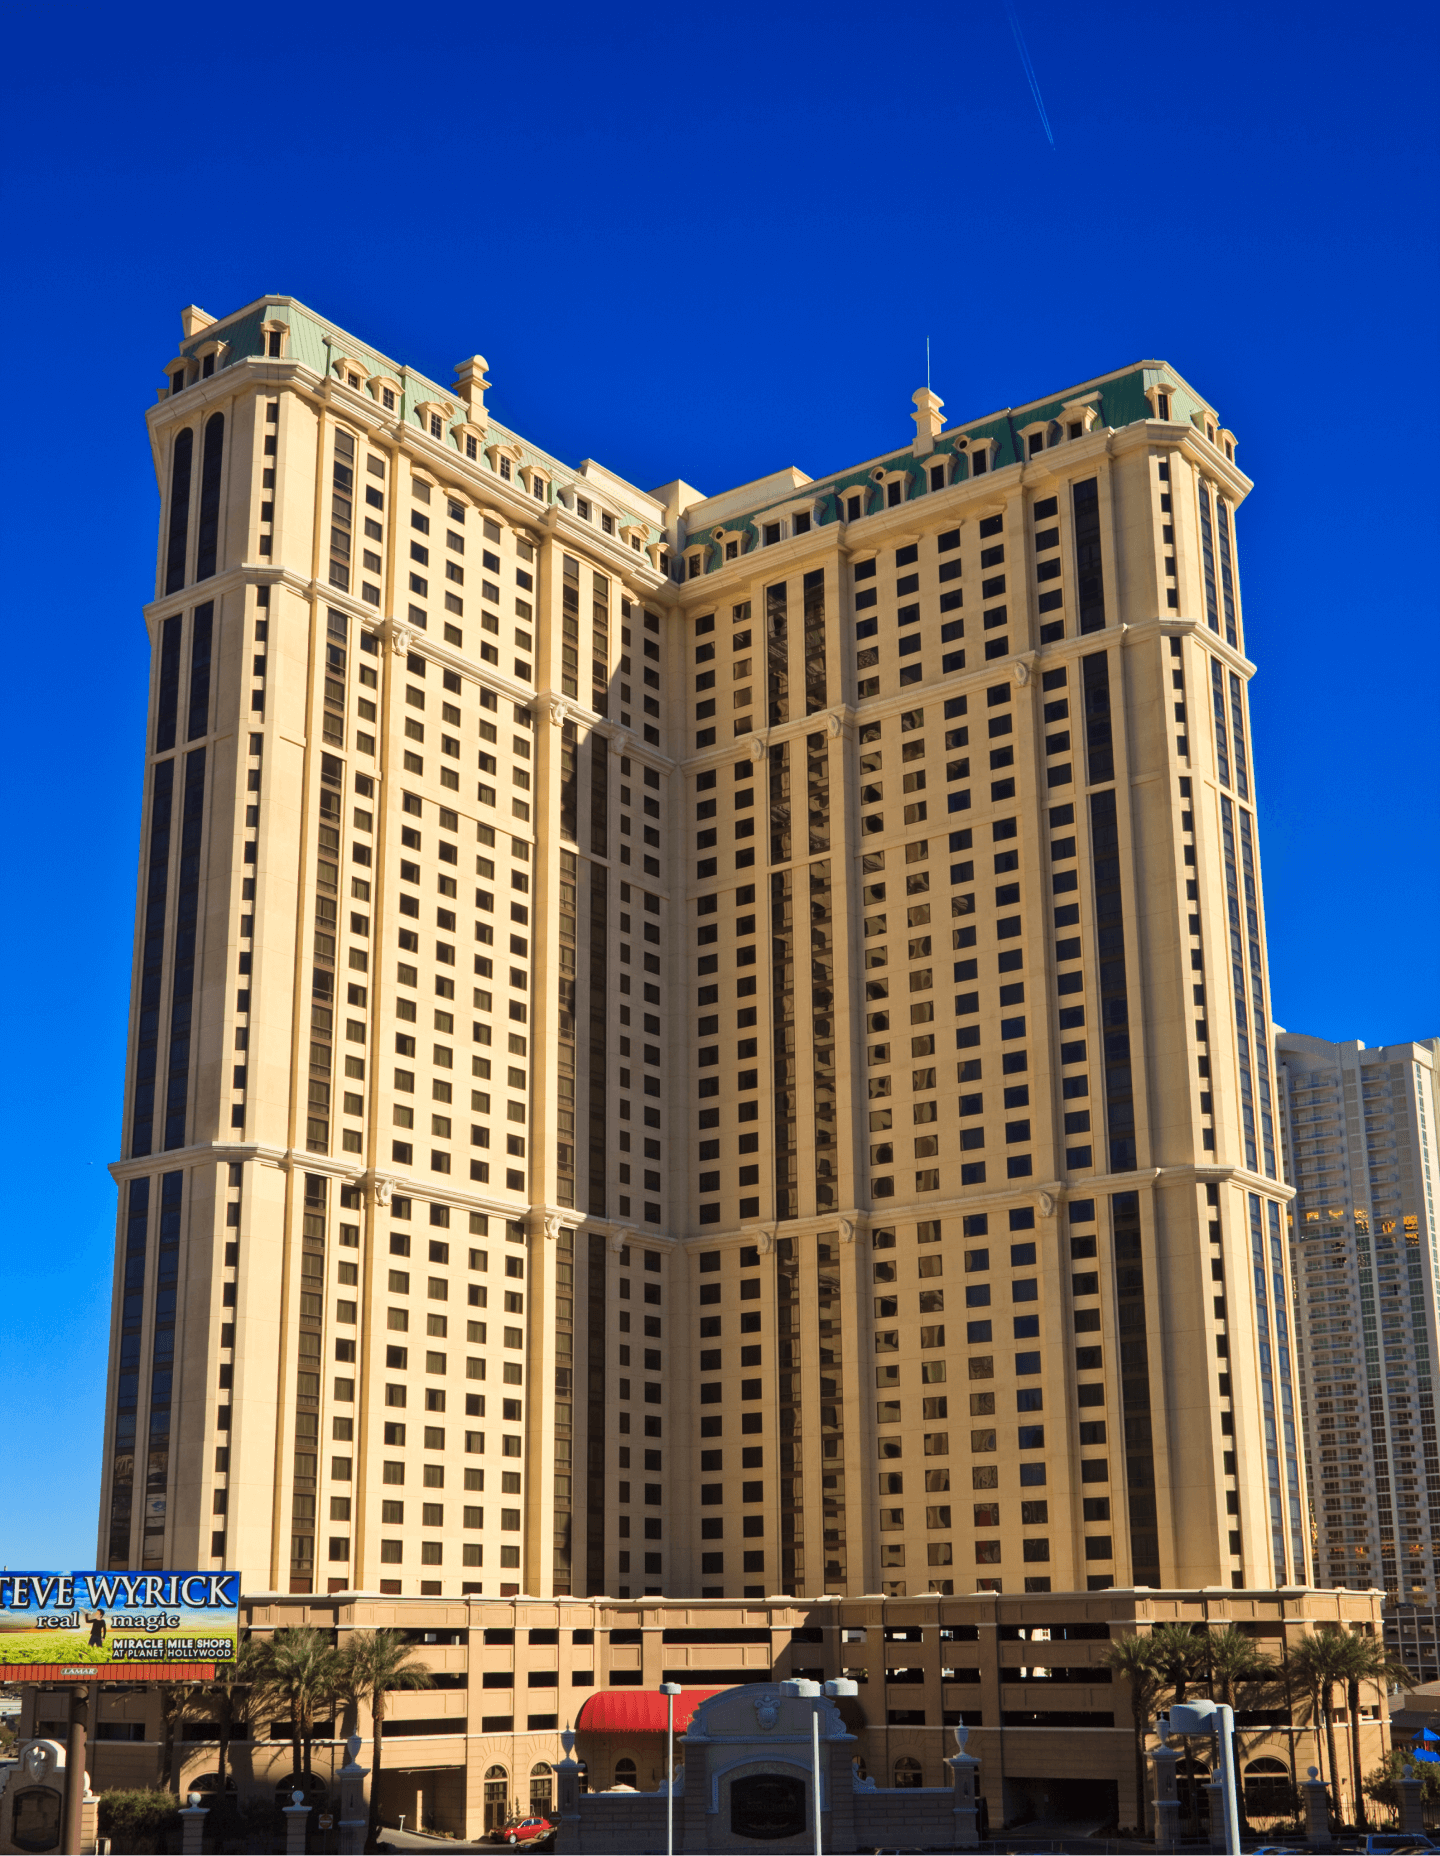 Marriott Grand Chateau, Las Vegas, NV - CM&D